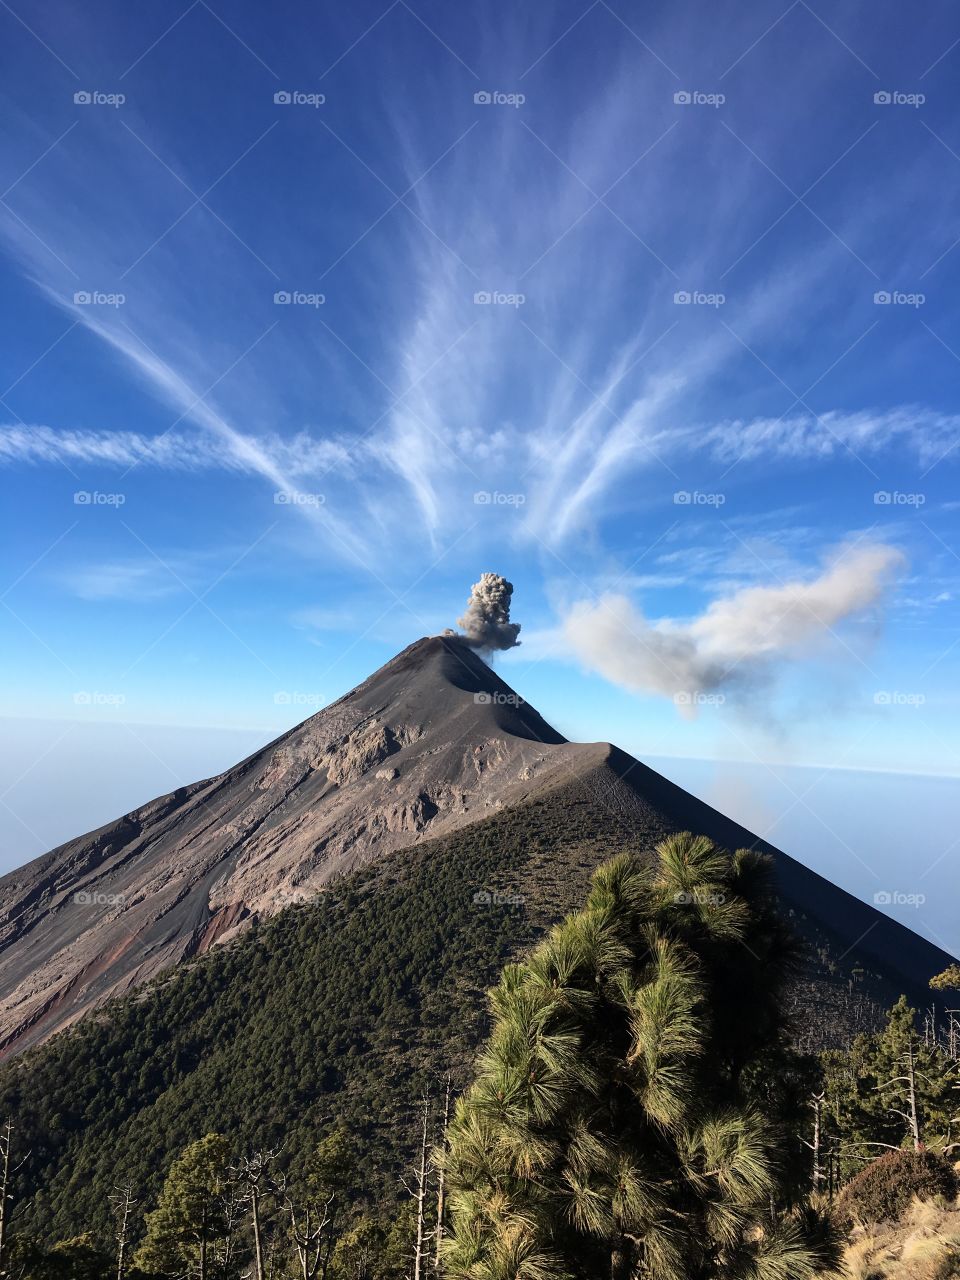 Volcan de fuego in eruption Guatemala 🇬🇹